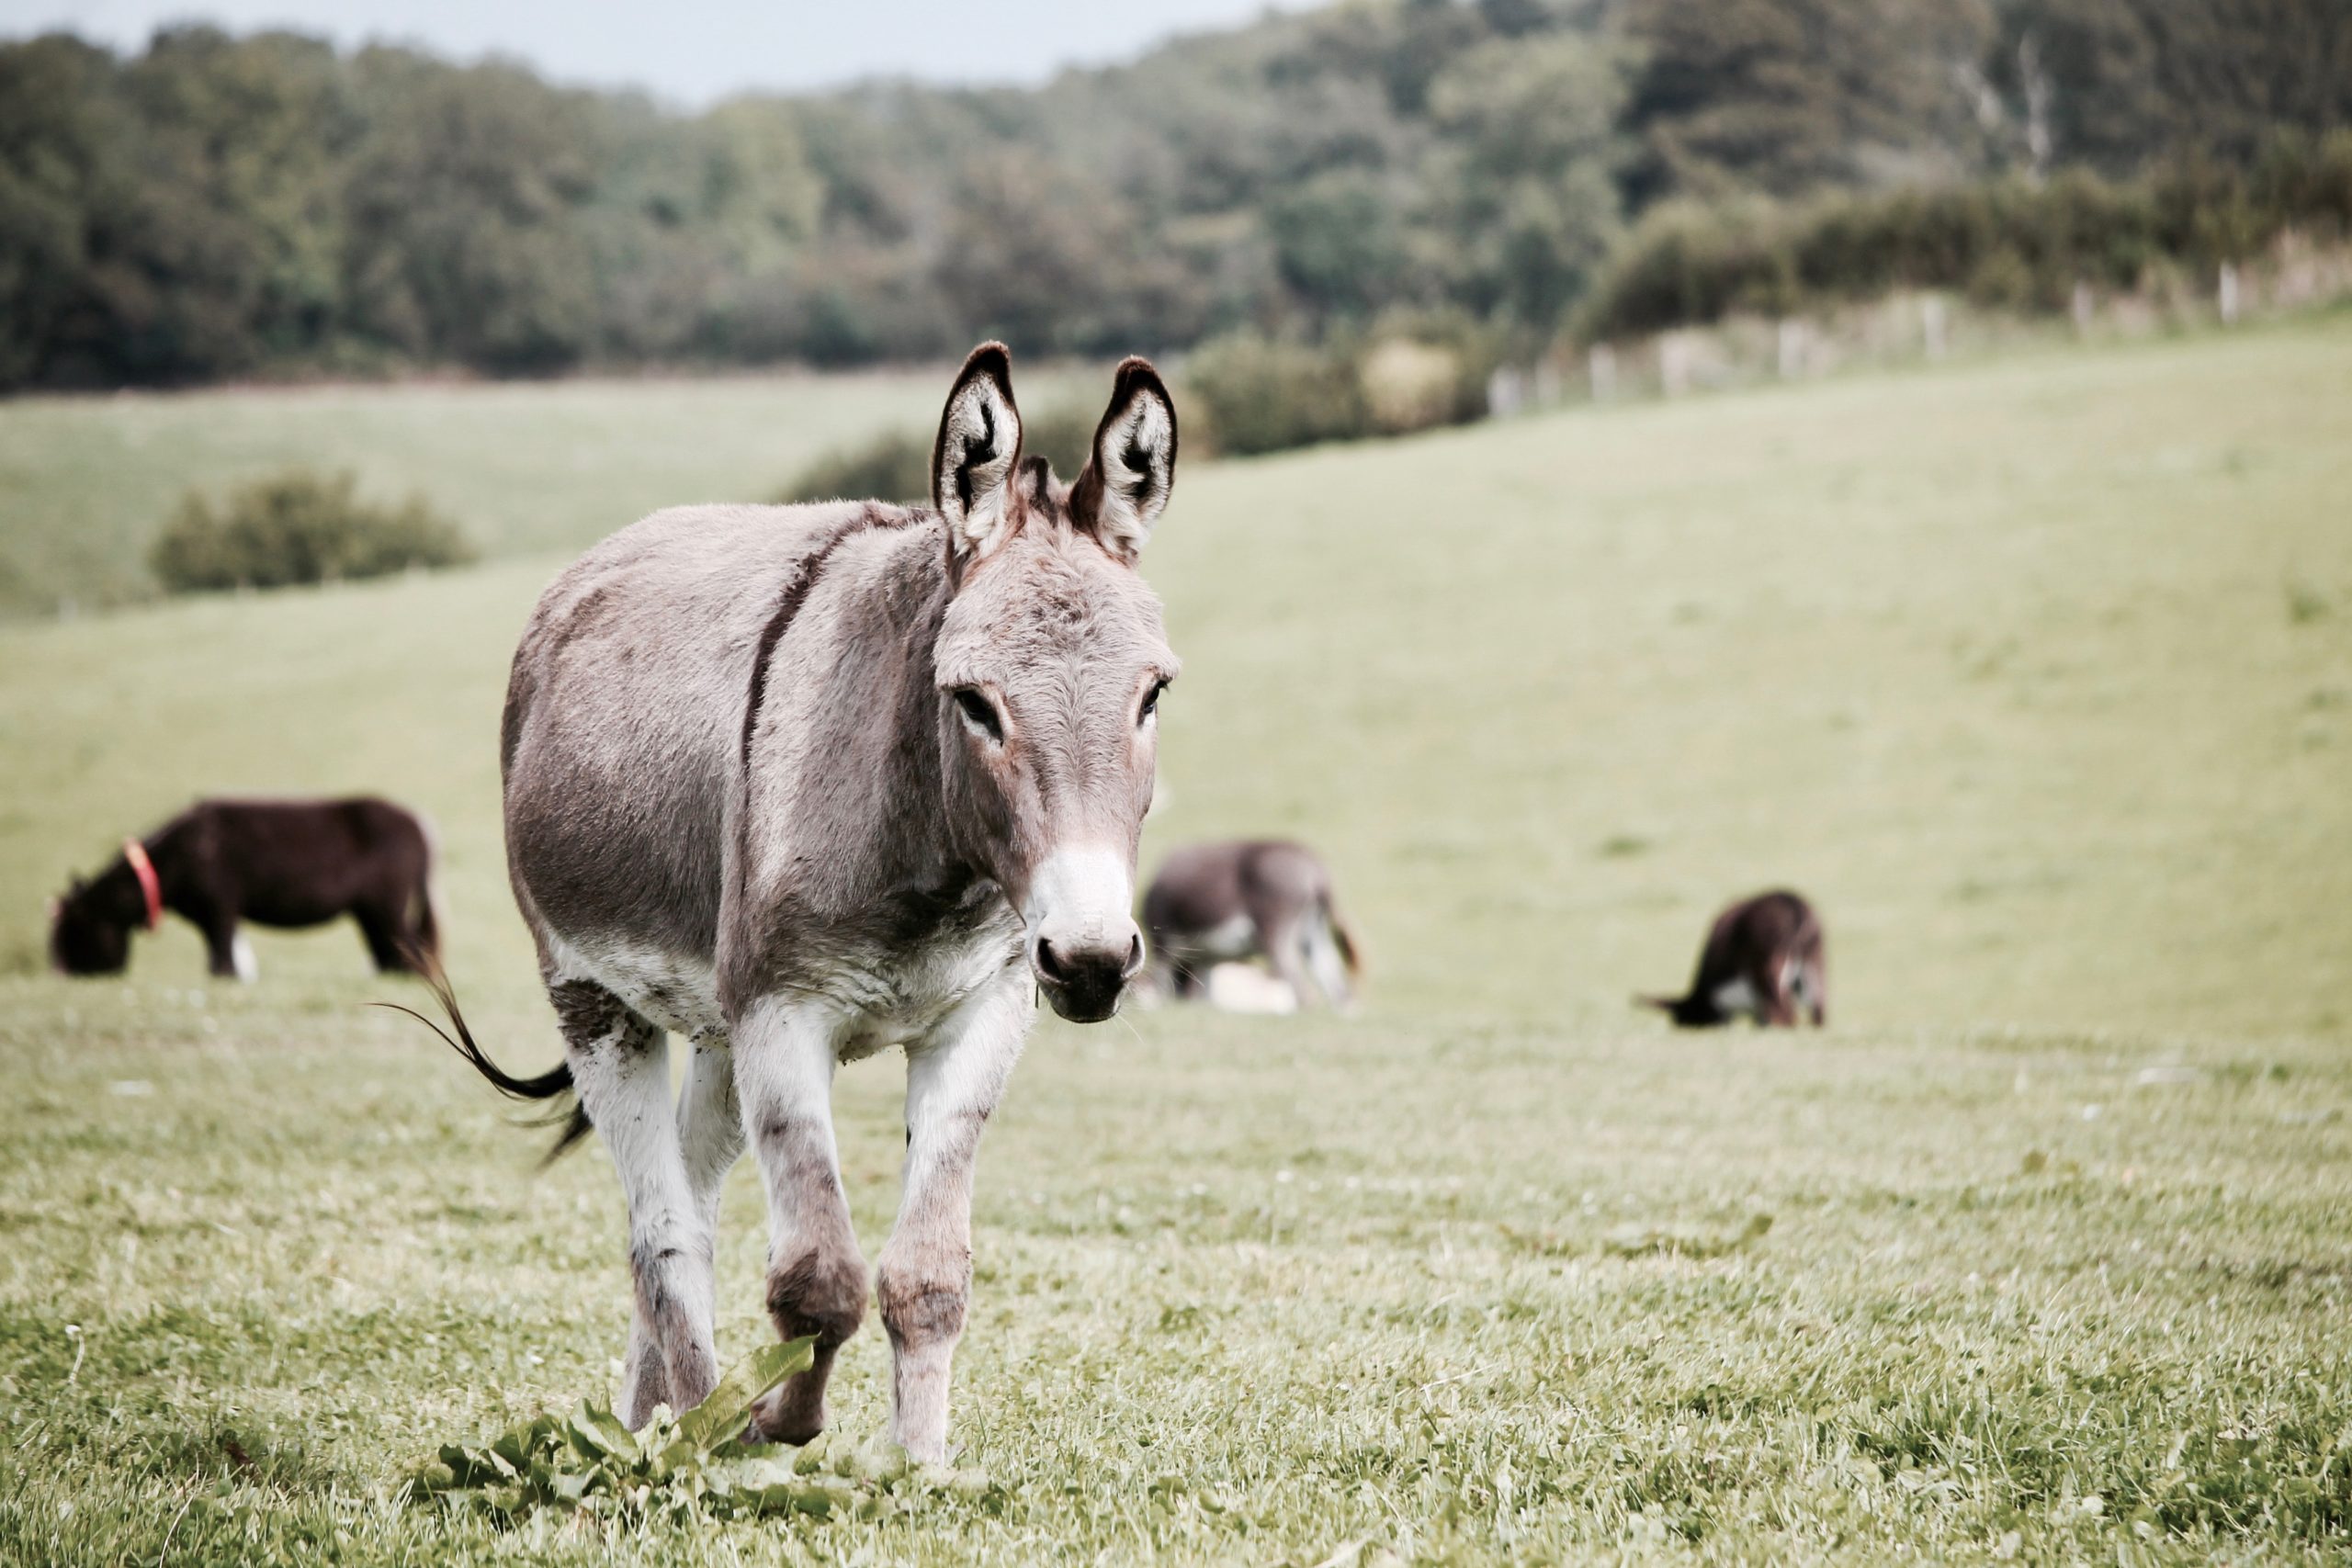 Donkeys in farmers field